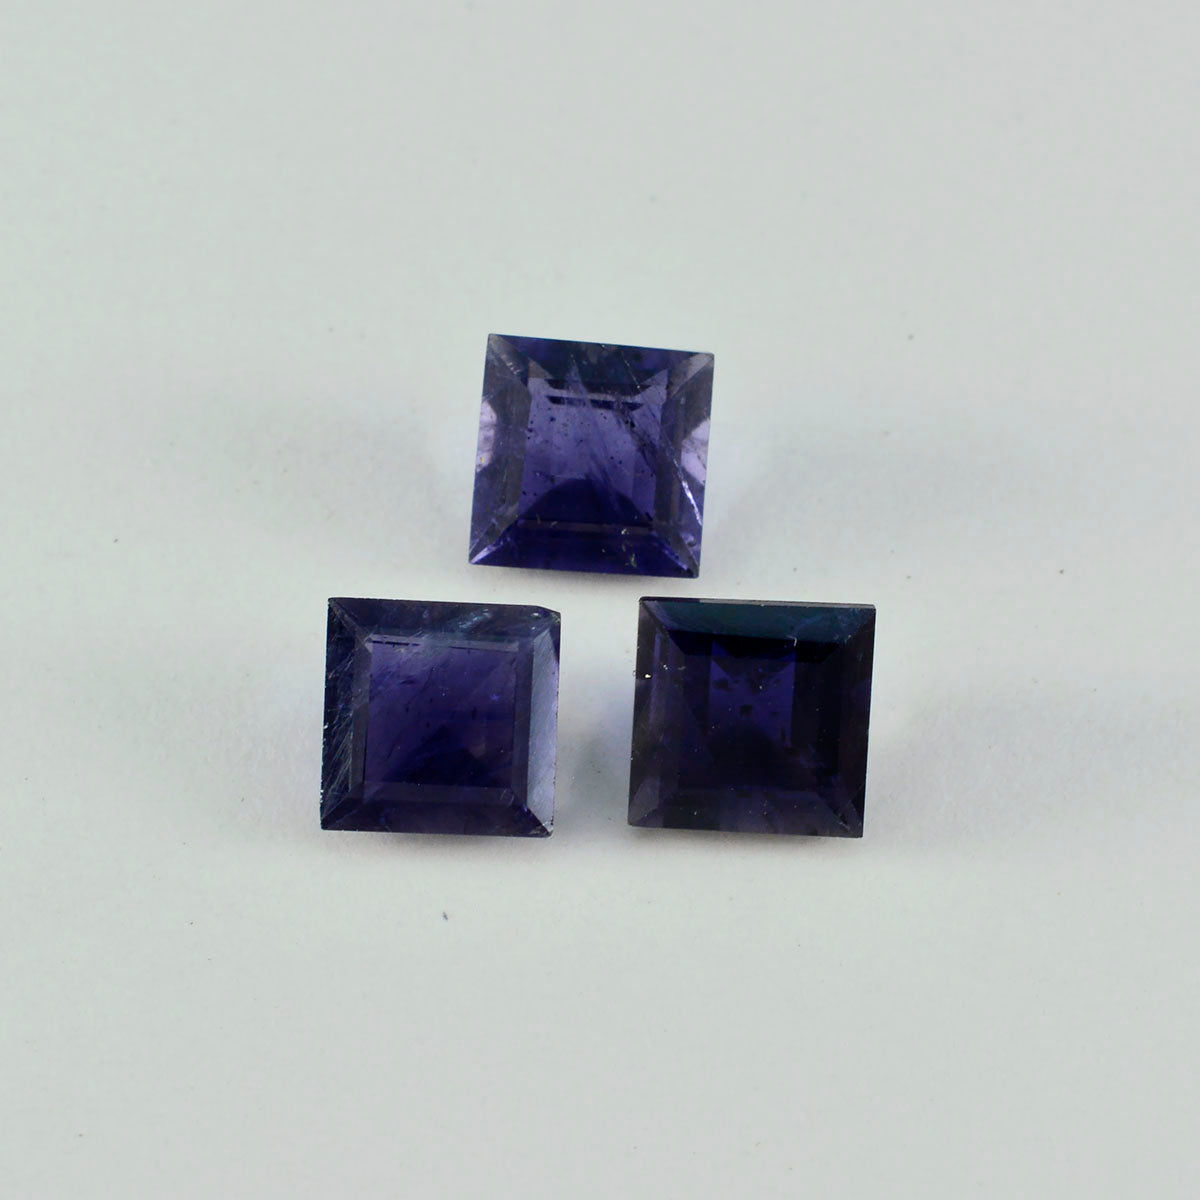 Riyogems 1PC Blue Iolite Faceted 14x14 mm Square Shape pretty Quality Stone